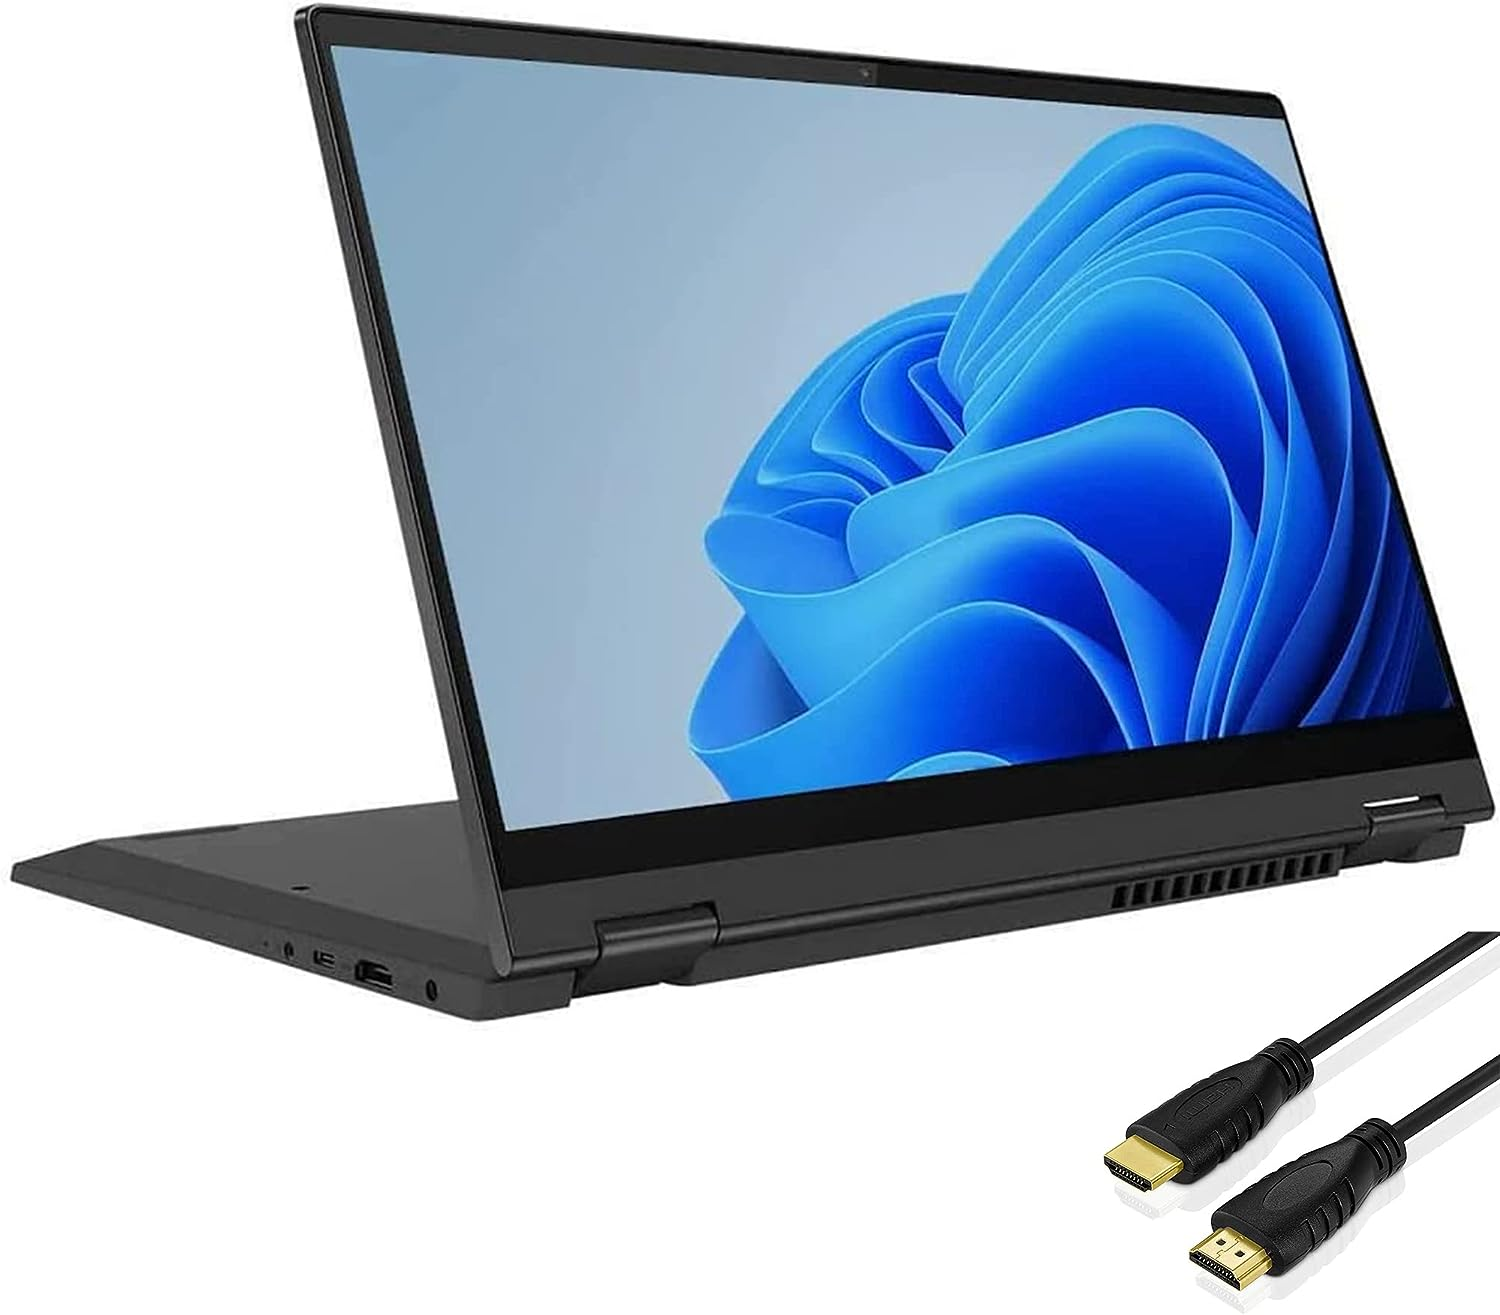 Lenovo Flex 5 2 in 1 Convertible Laptop